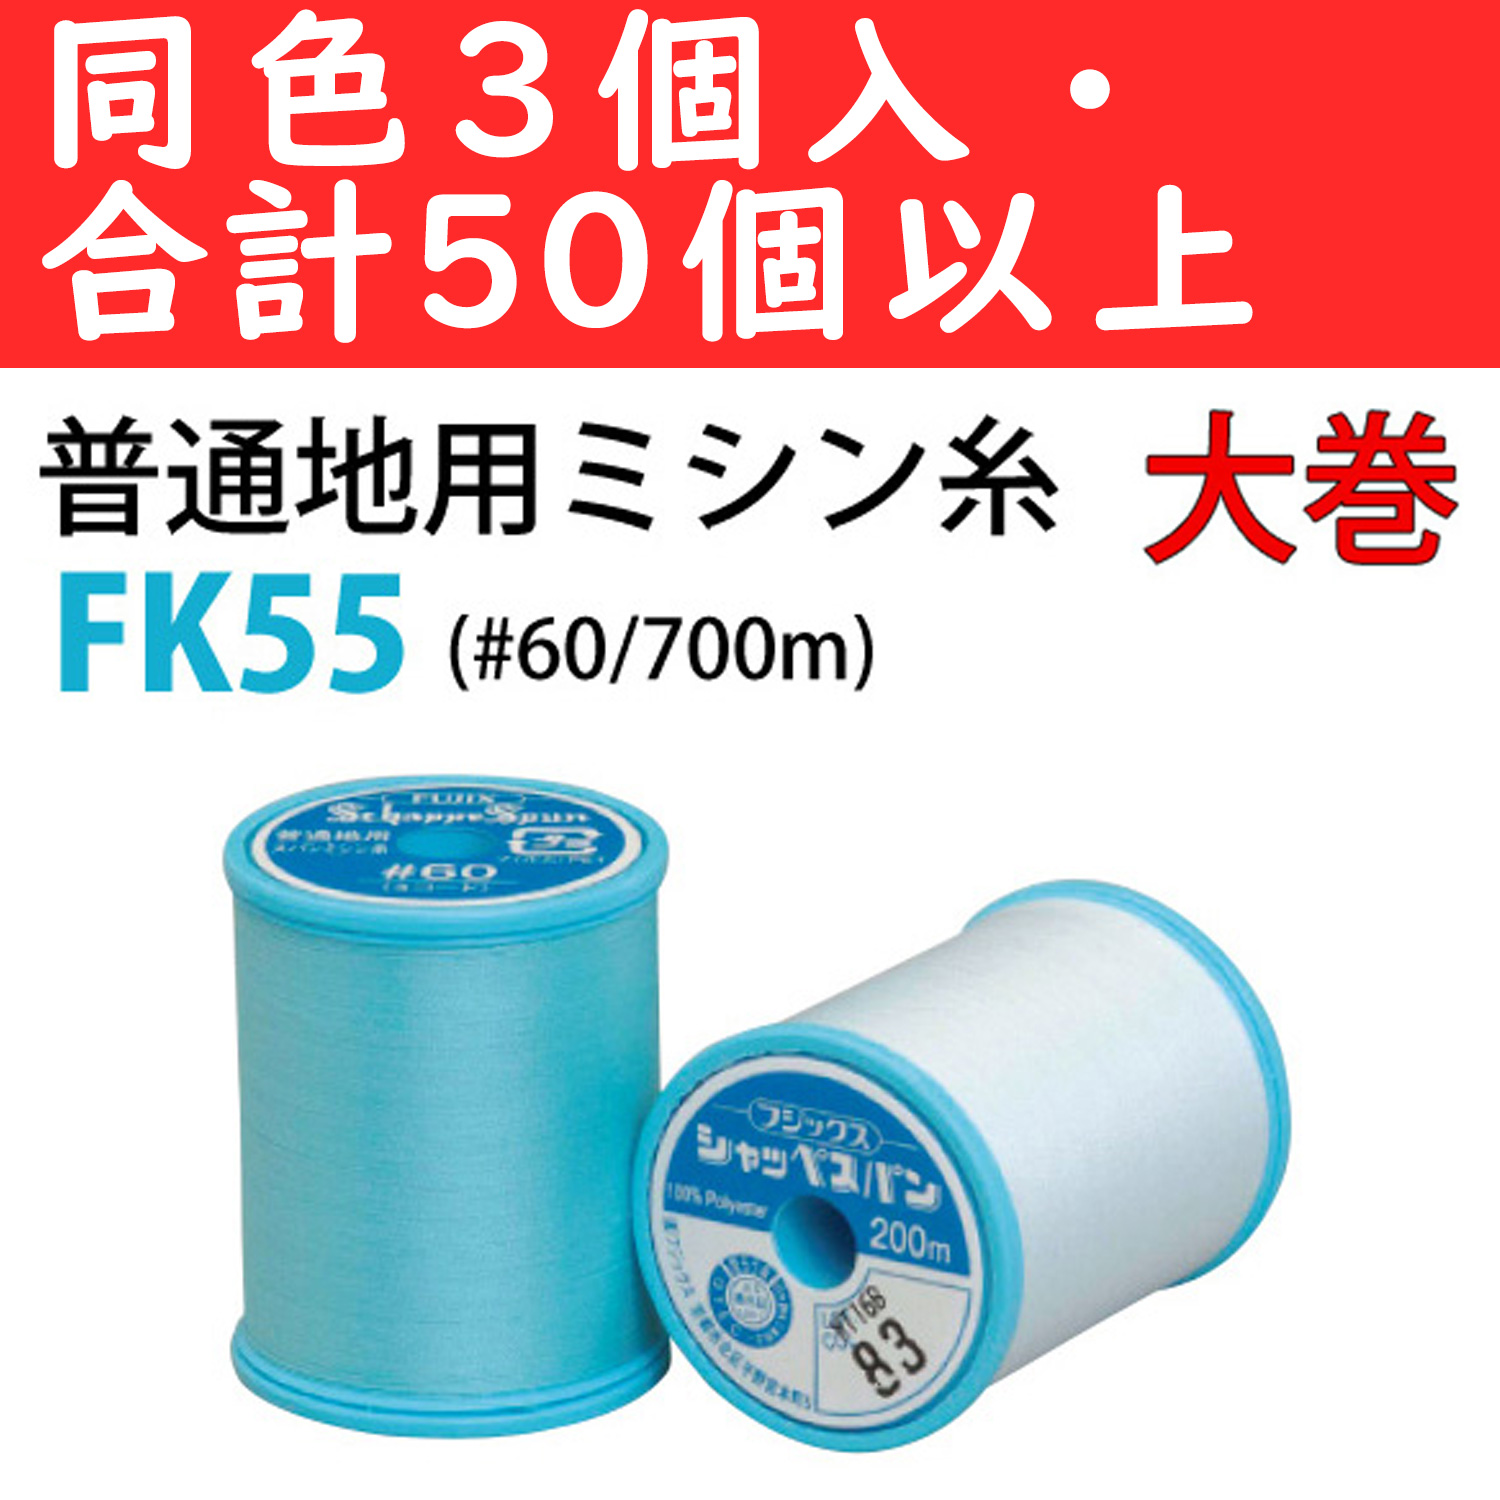 【1/16まで】■FK55-OVER50 シャッペスパン 普通地用ミシン糸 #60/700m 同色3個セット 取り合わせ50個以上 (セット)